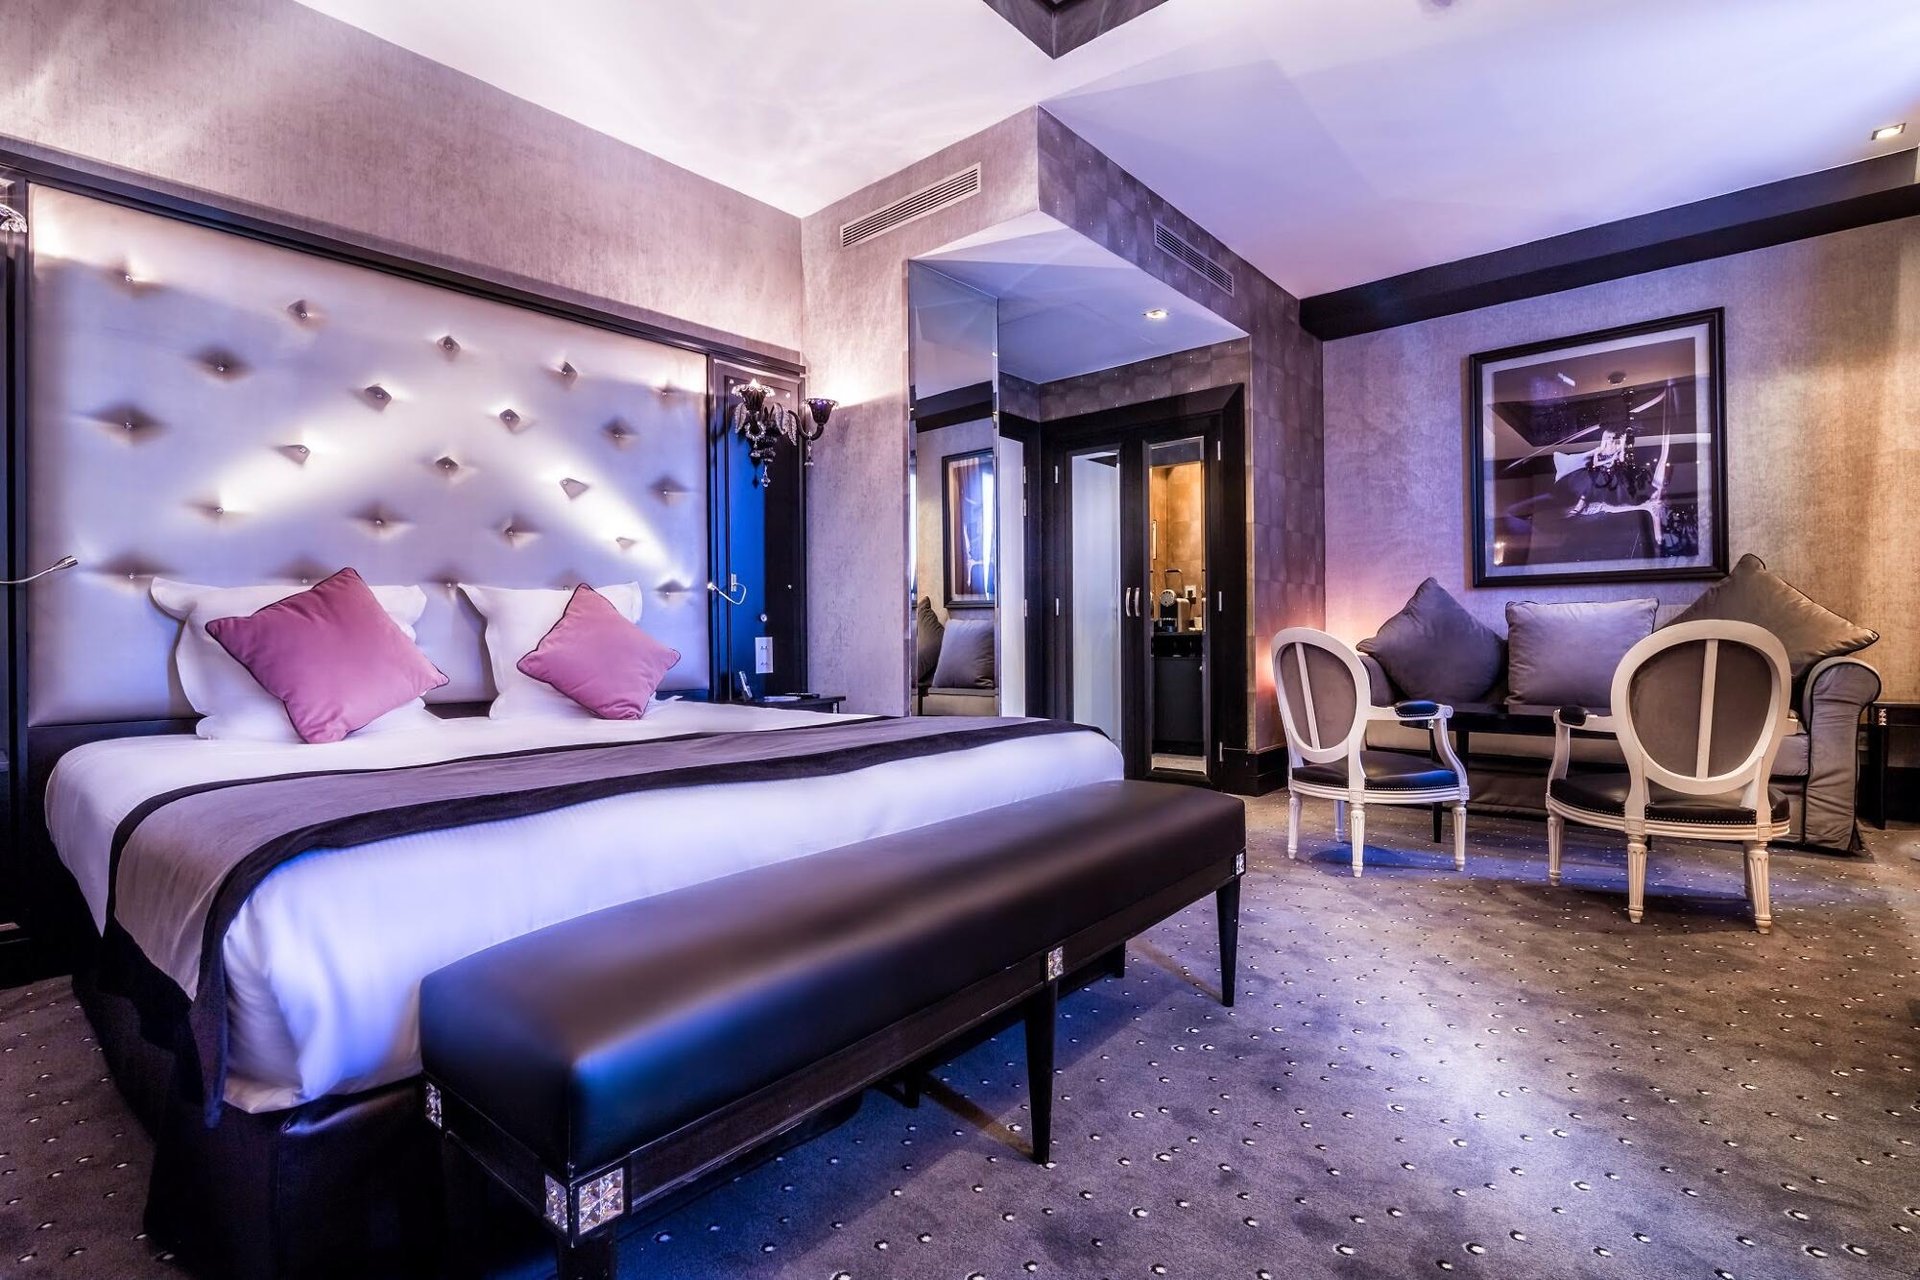 Maison Albar Hotels Le Diamond | Hôtel 5 étoiles Paris